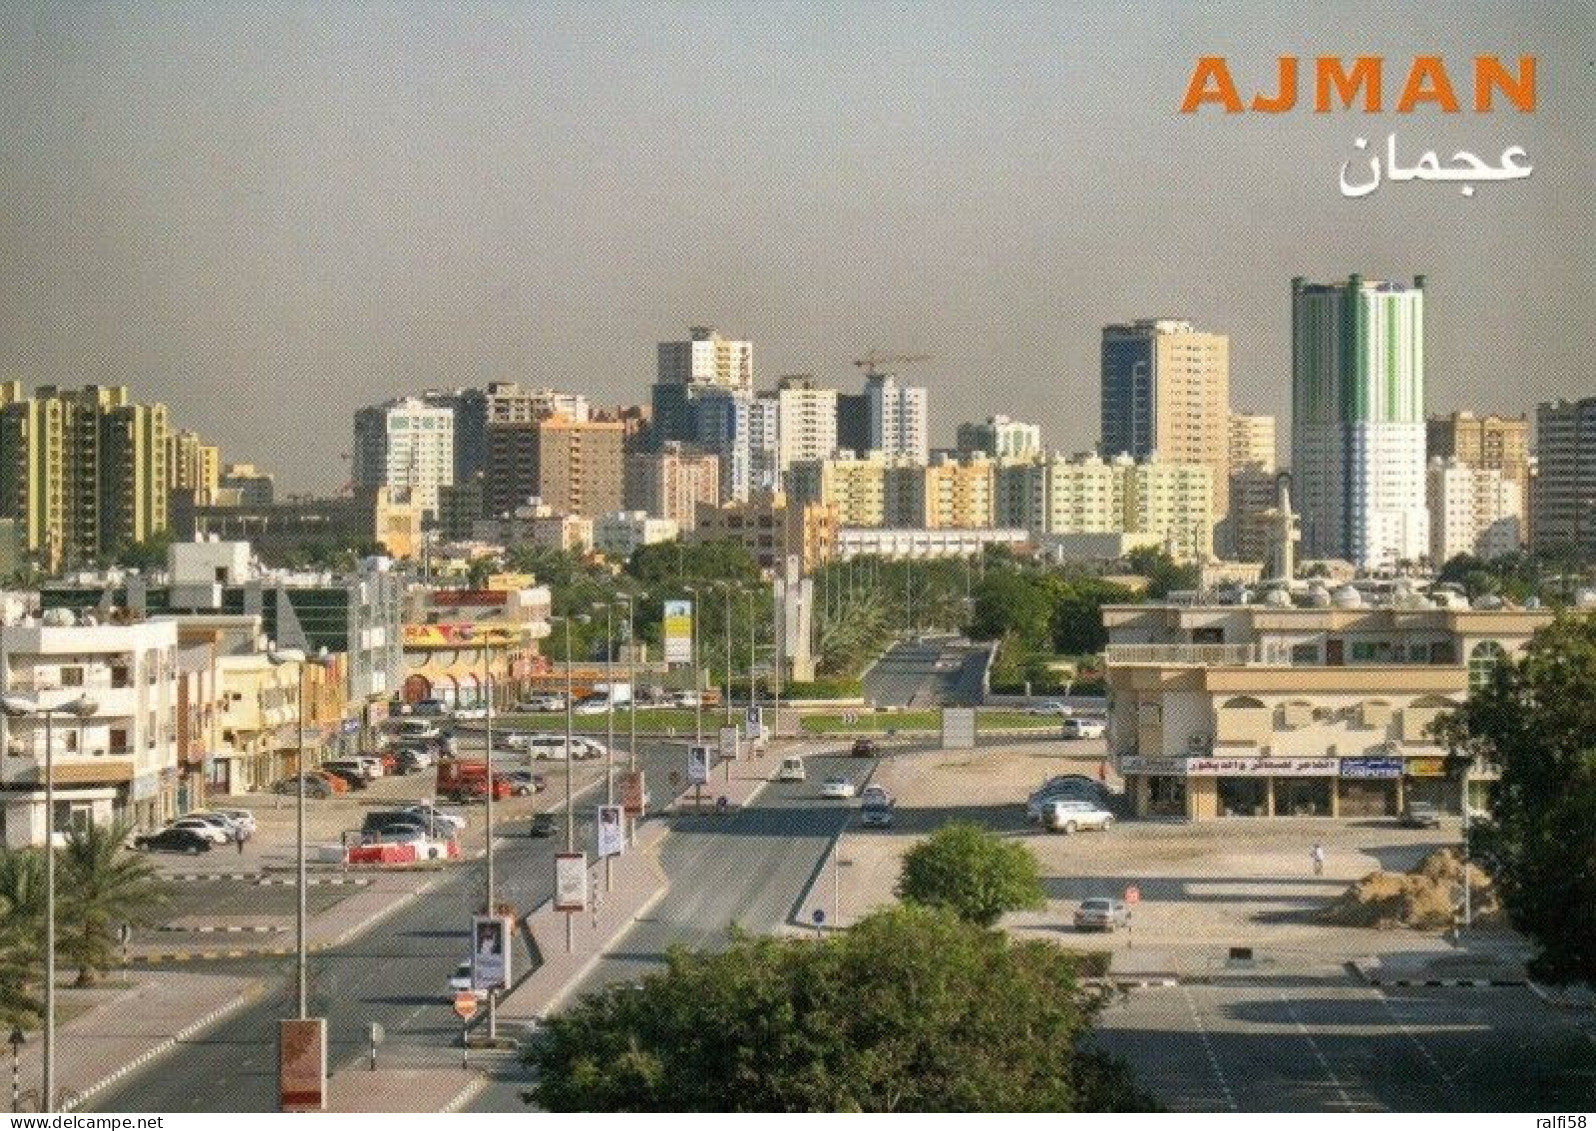 1 AK Ajman / United Arab Emirates * Ajman - Hauptstadt Des Emirats Ajman - Luftbildaufnahme * - Emirati Arabi Uniti